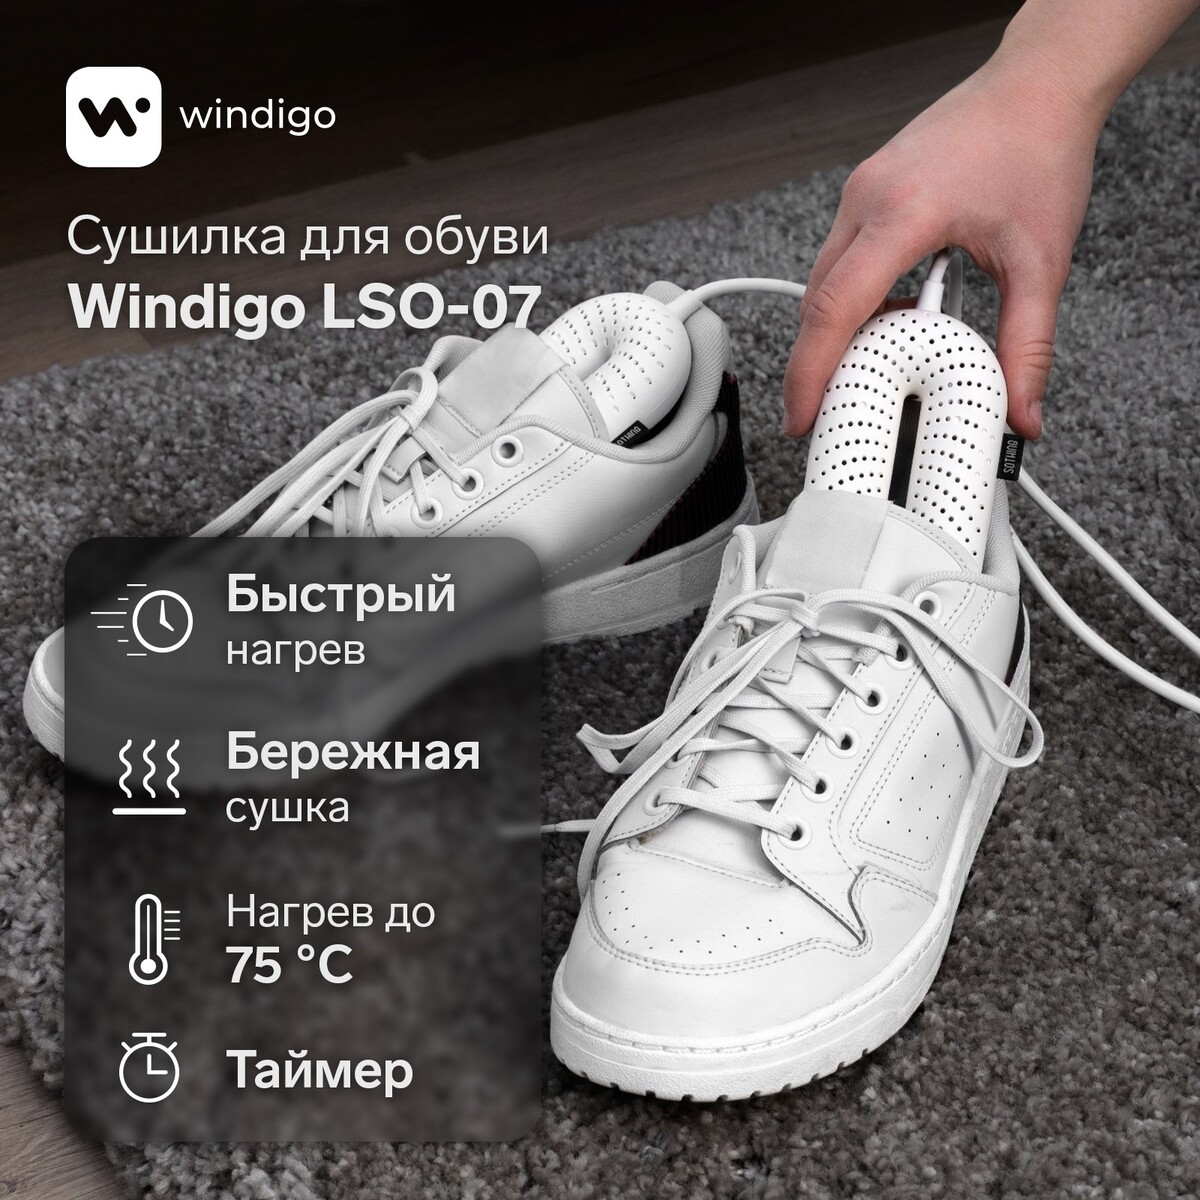 Сушилка для обуви windigo lso-07, 17 см, 20 вт, индикатор, таймер 3/6/9 часов, белая сушилка для обуви эсо 9 220 9 вт 14 см синяя